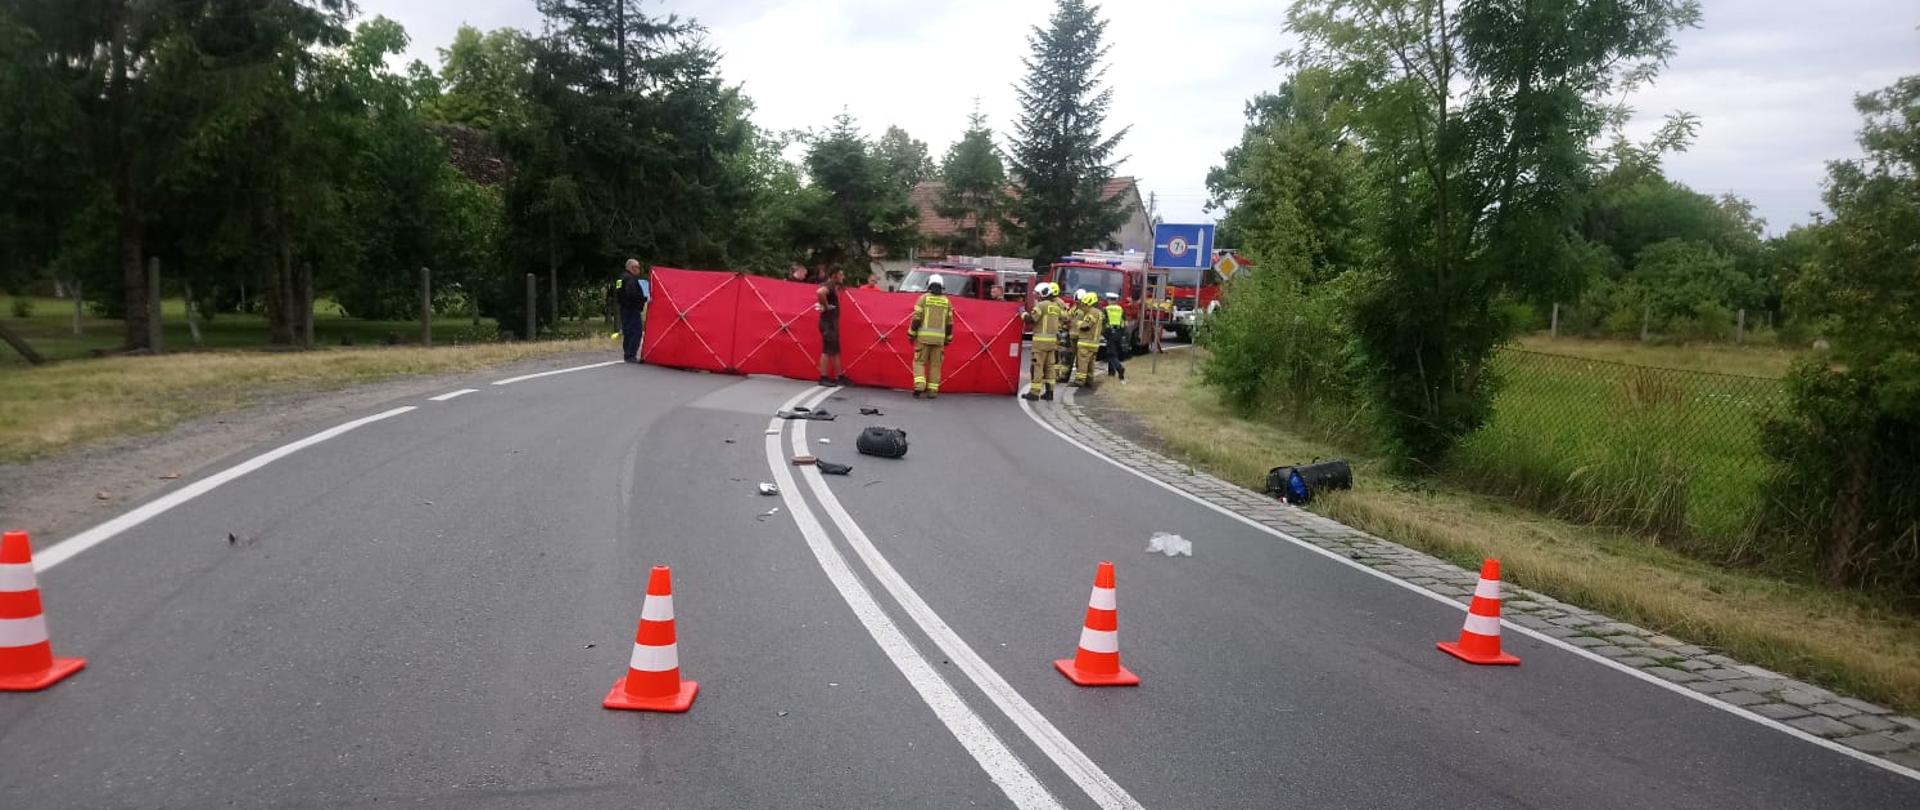 Wypadek z udziałem motocykla na drodze krajowej nr. 39 w pobliżu Rogalic - zdjęcie przedstawia jezdnię na której rozłożony jest czerwony parawan, w tle stoją strażacy oraz samochody ratownicze